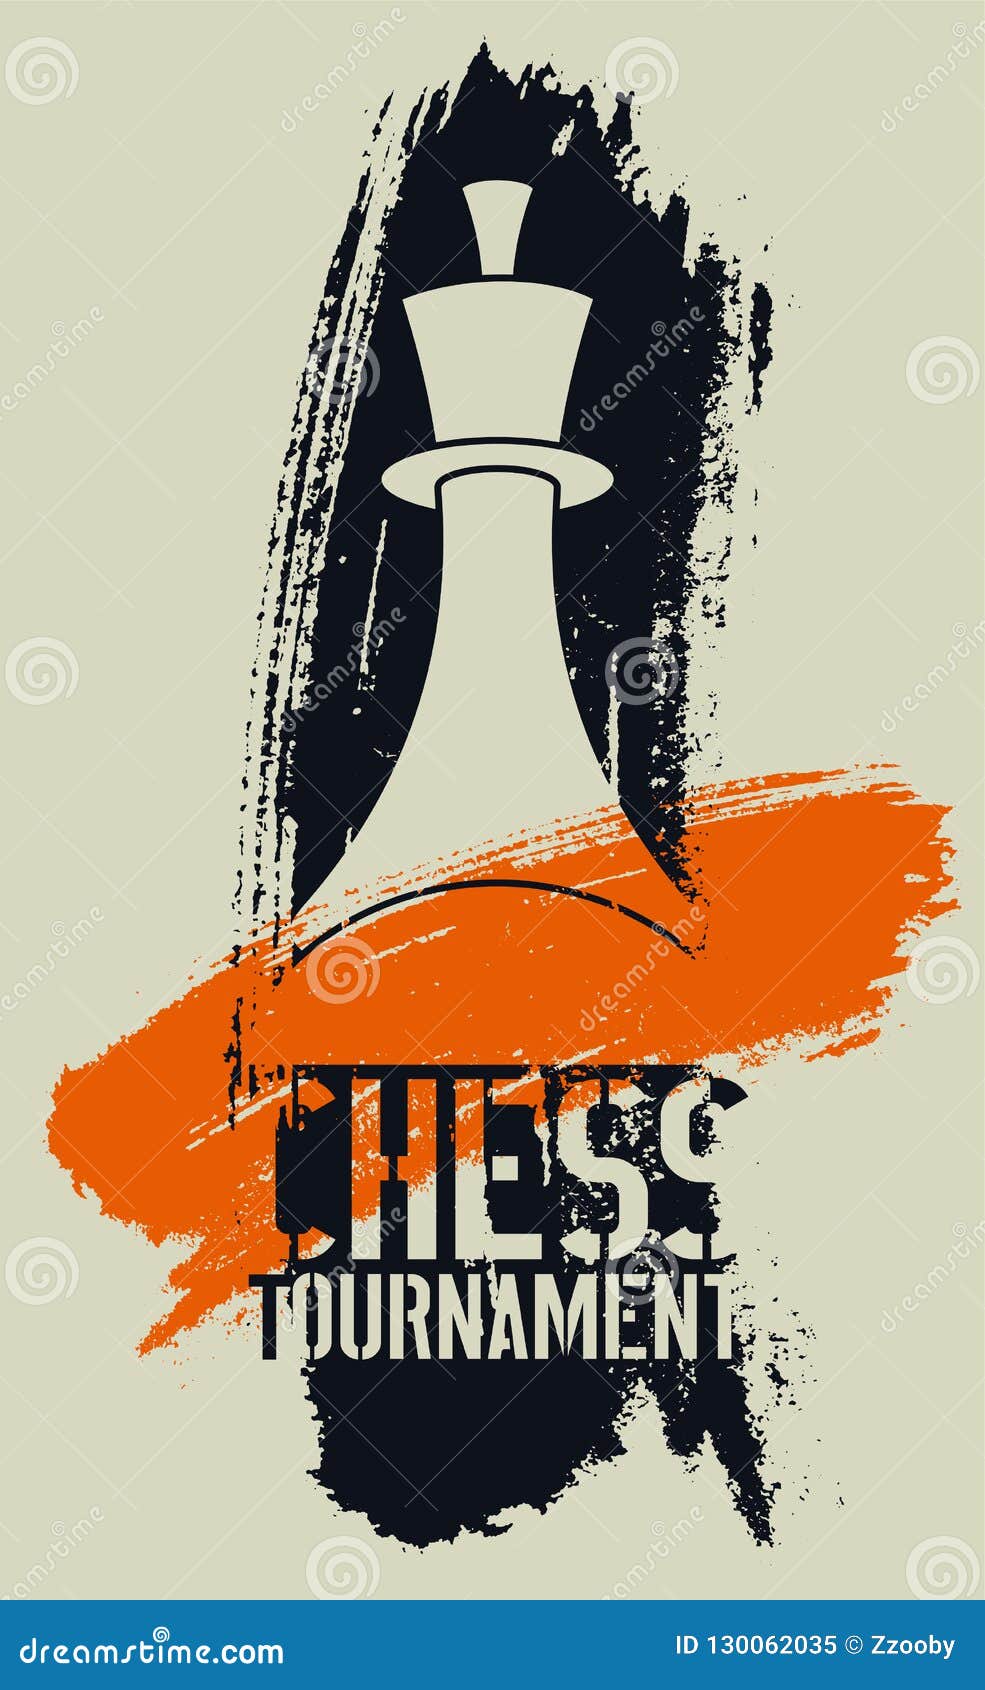 Cartaz de competição de xadrez vintage, Vetor Grátis